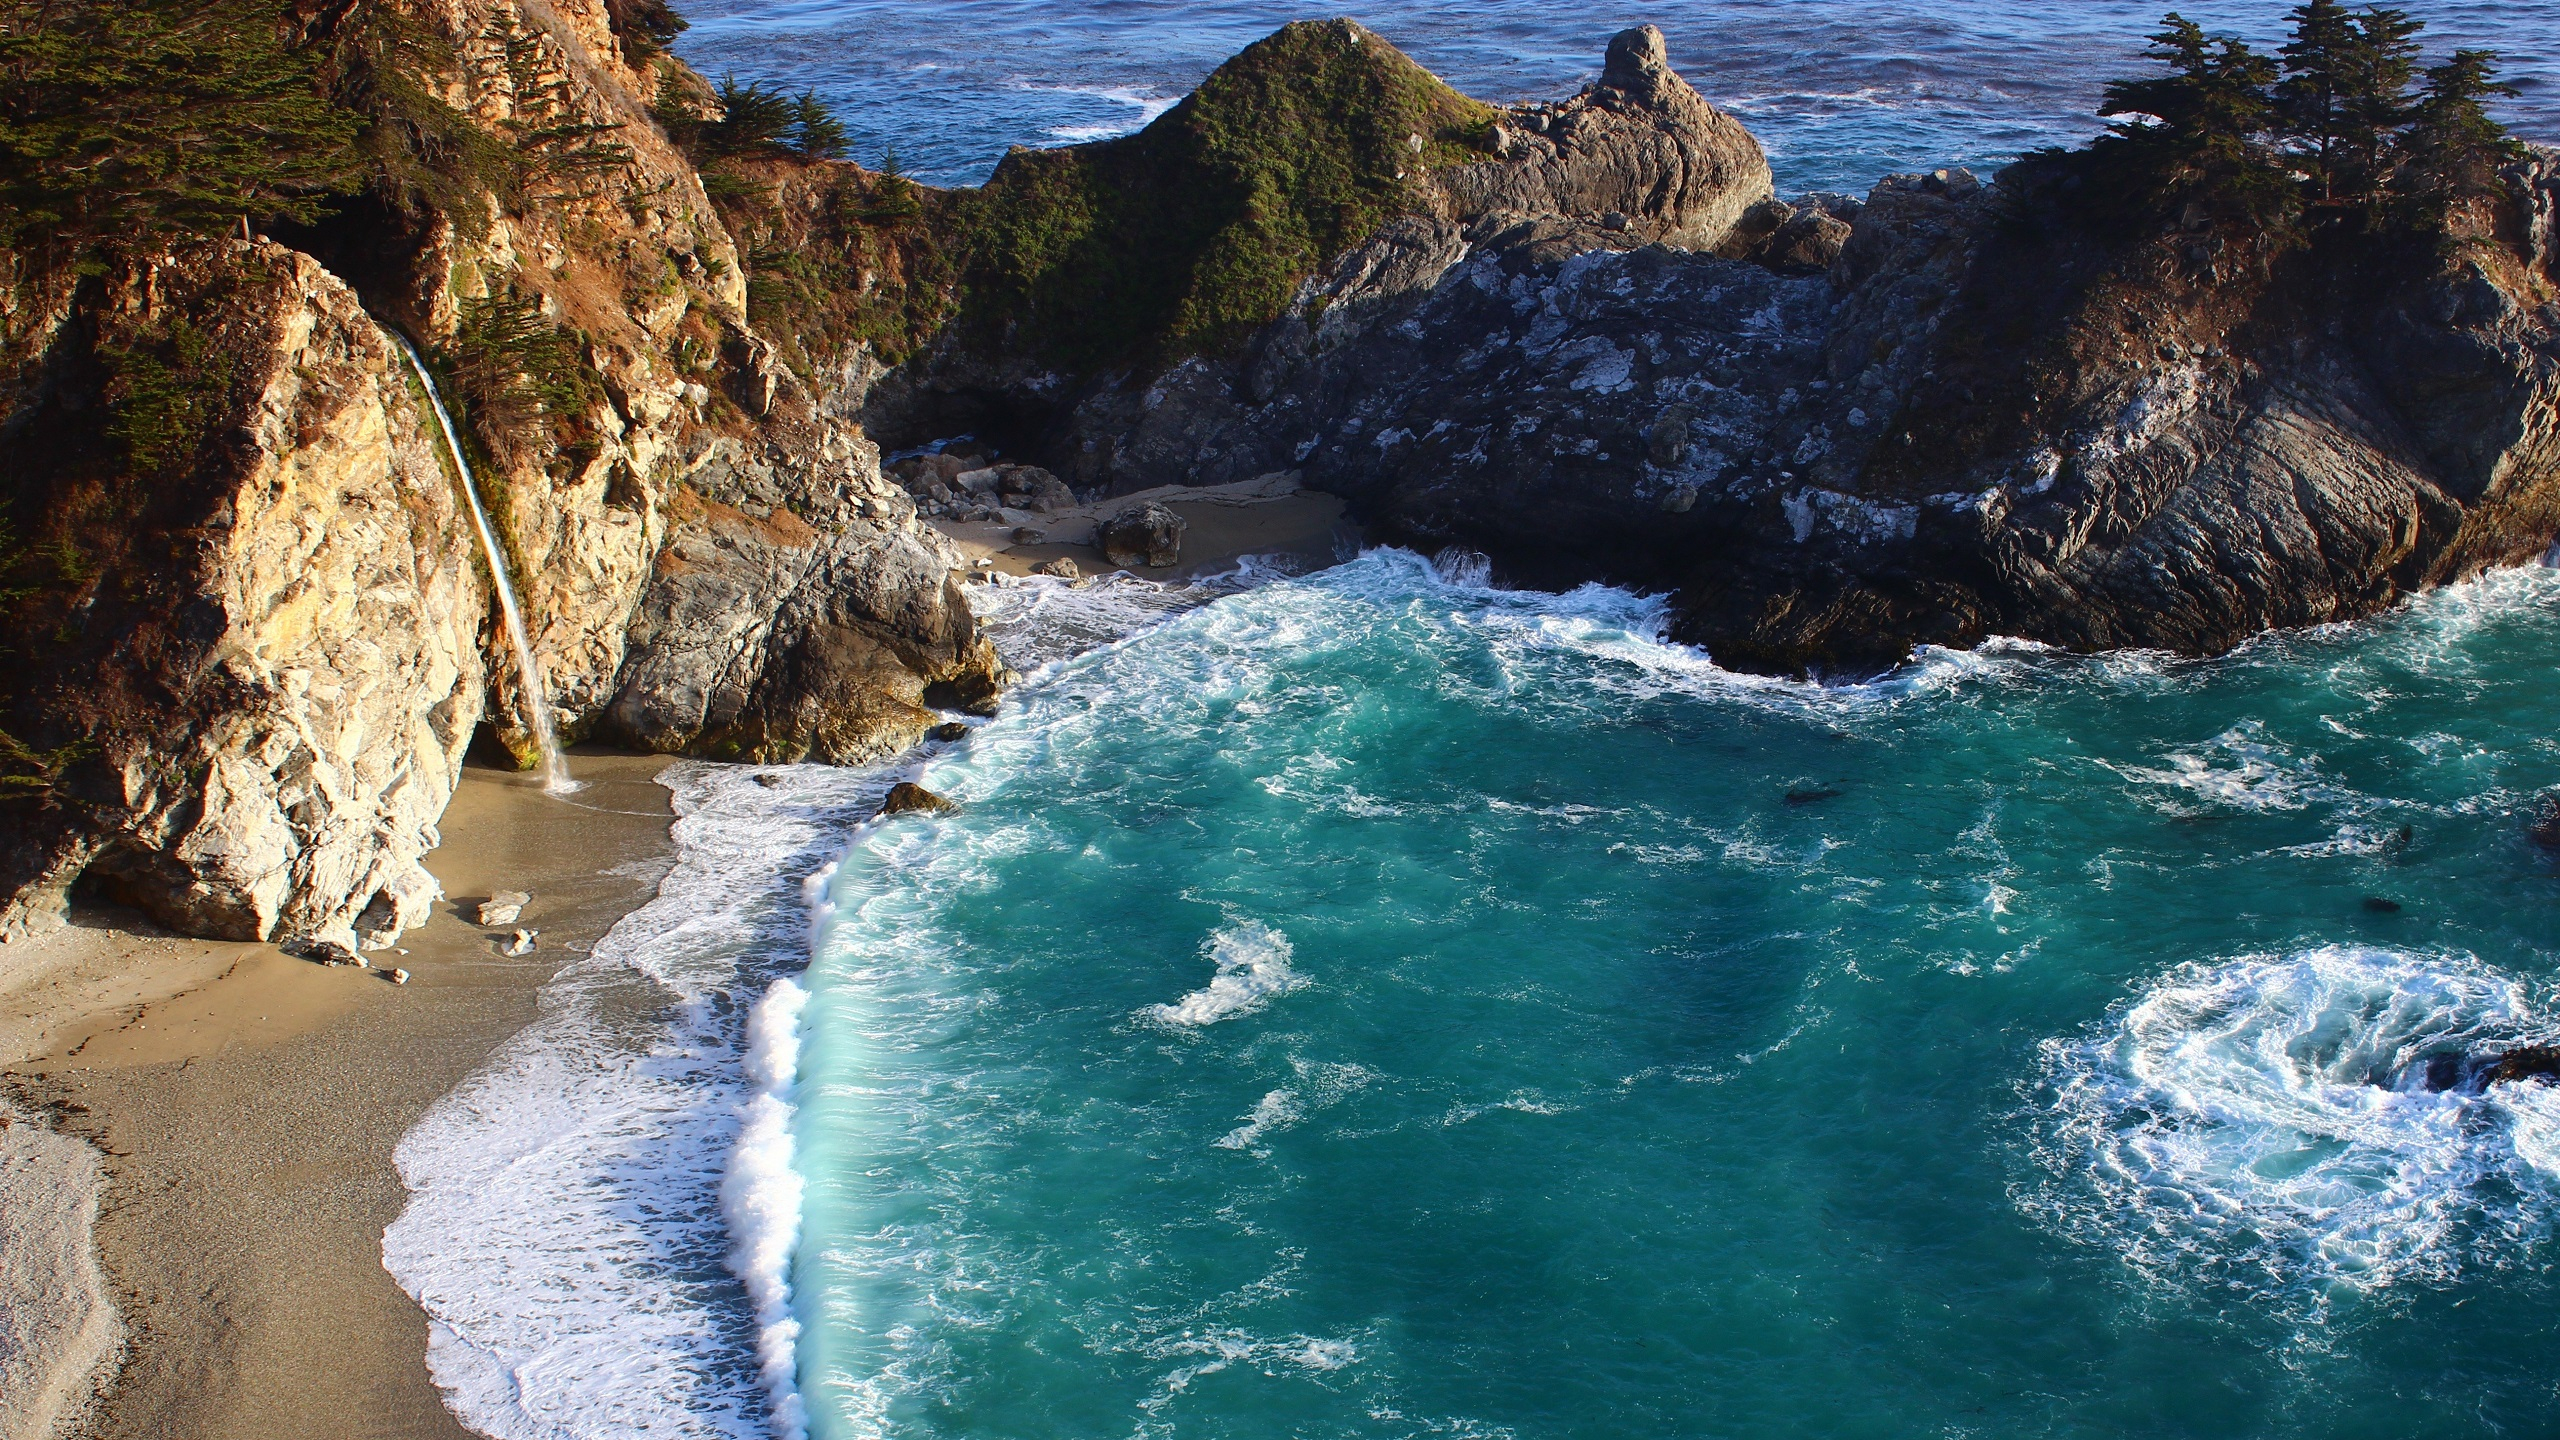 Фото обои камни, волны, океан, пляж, мини-водопад, пейзажи - бесплатные картинки на Fonwall